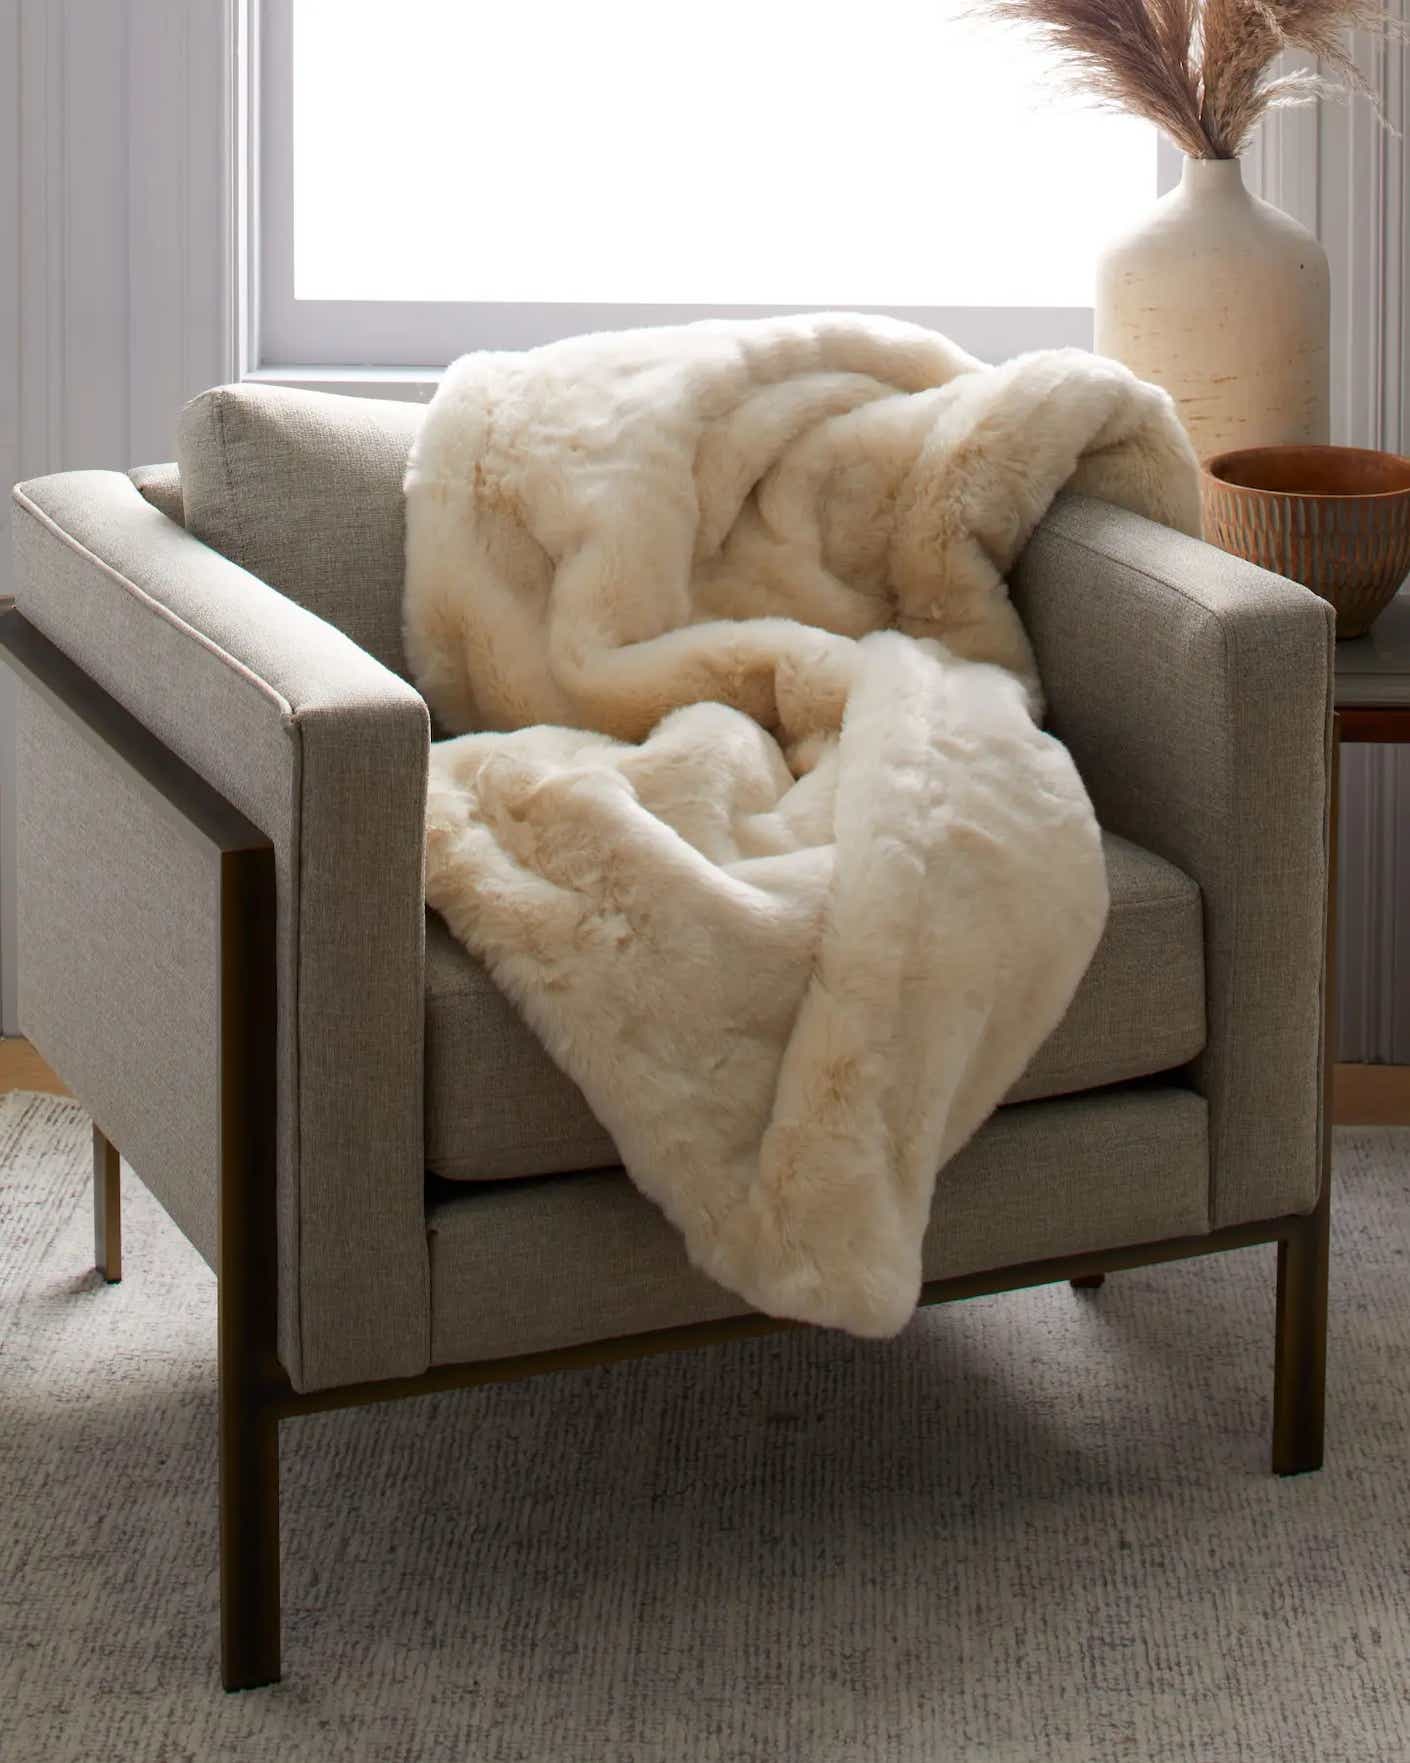 A fuzzy and plush fur throw lies thrown across a chair.